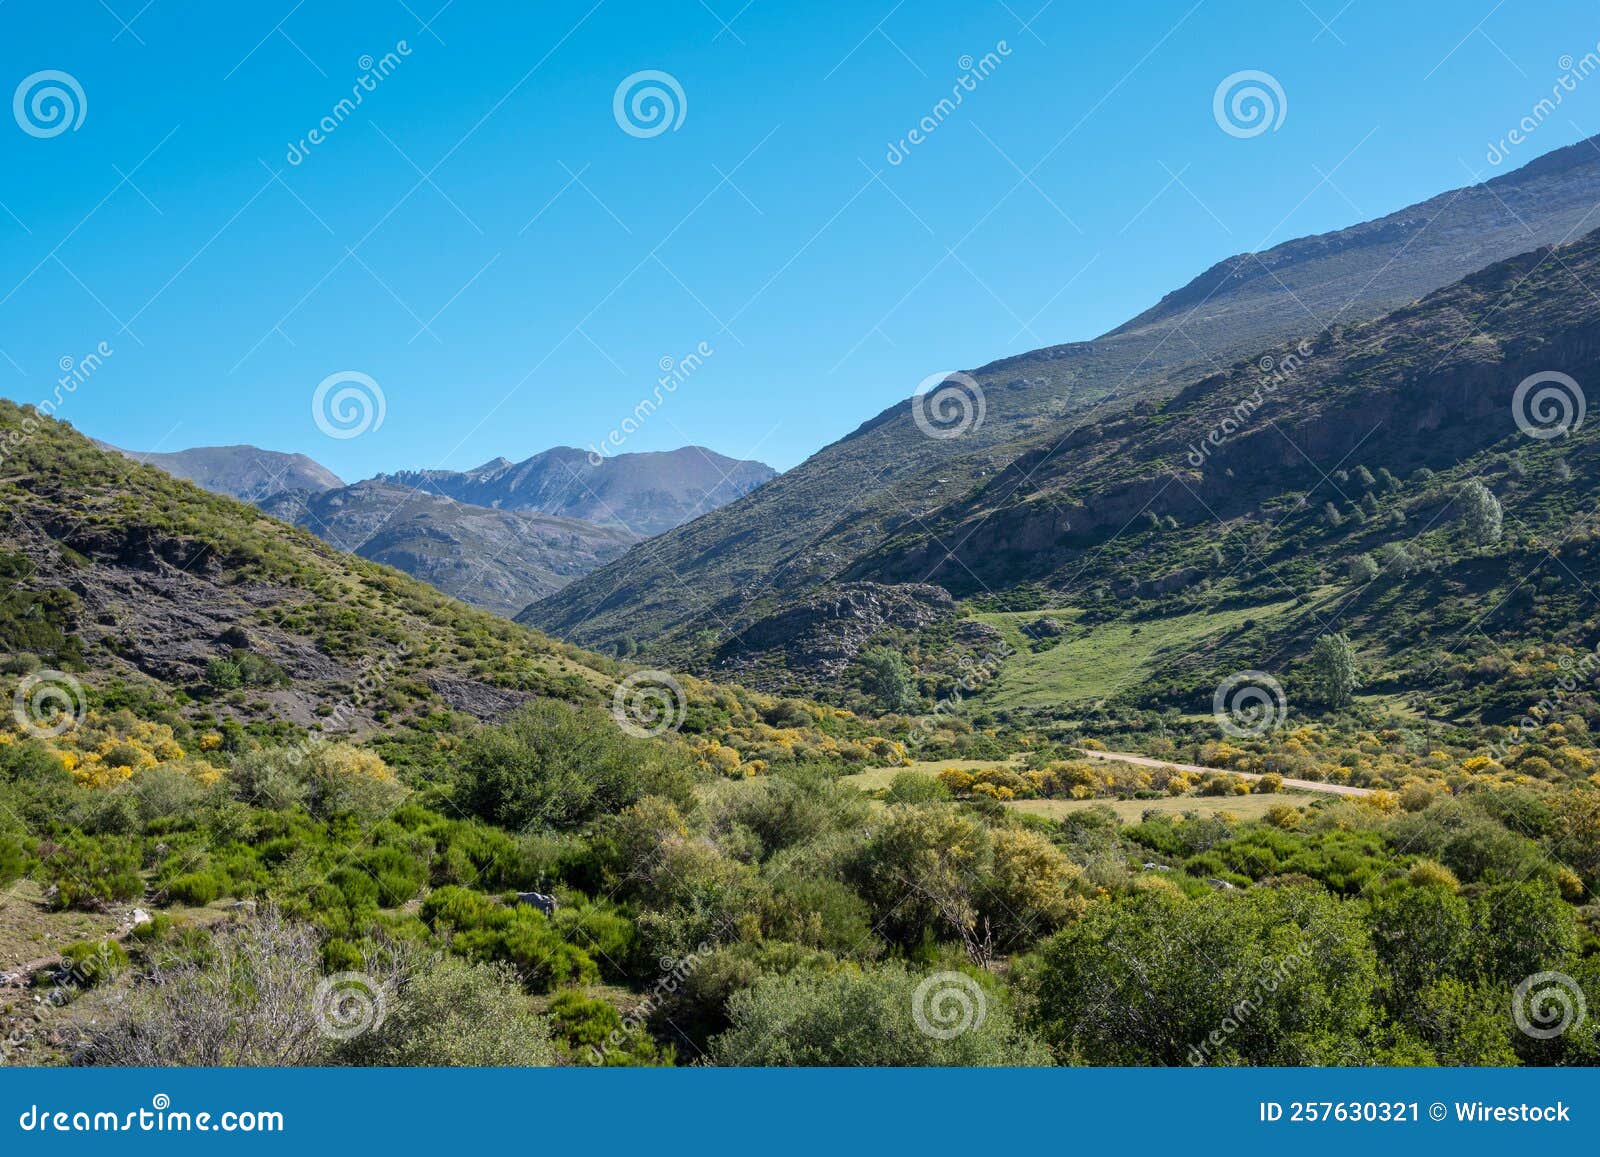 valle del arroyo de mazobre en el parque natural de la montaÃÆÃÂ±a